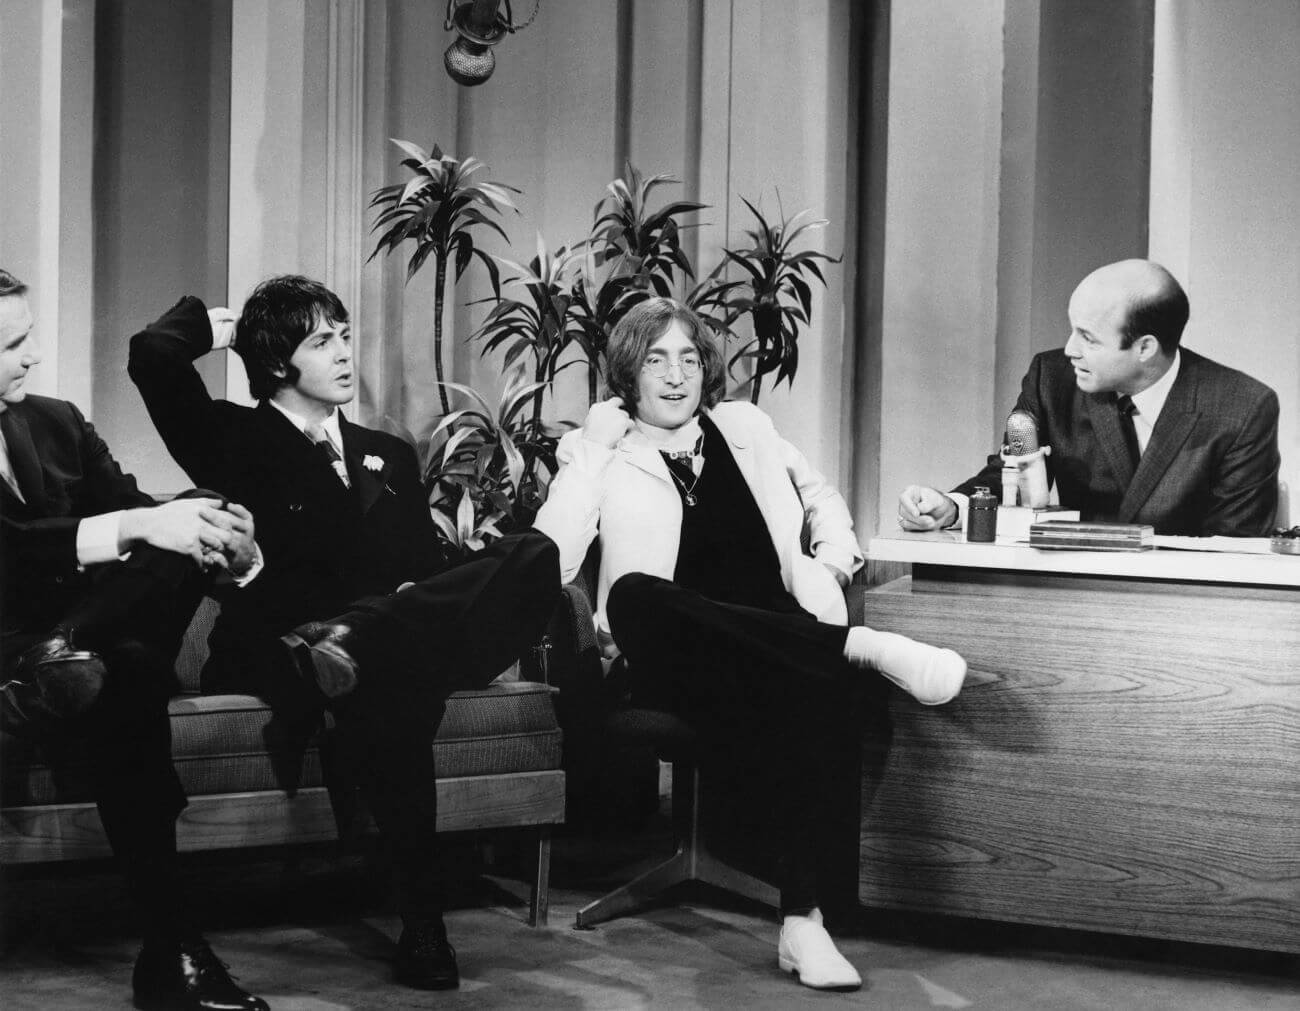 John Lennon a expliqué pourquoi "The Tonight Show" était l'émission "la plus embarrassante" à laquelle il ait jamais assisté